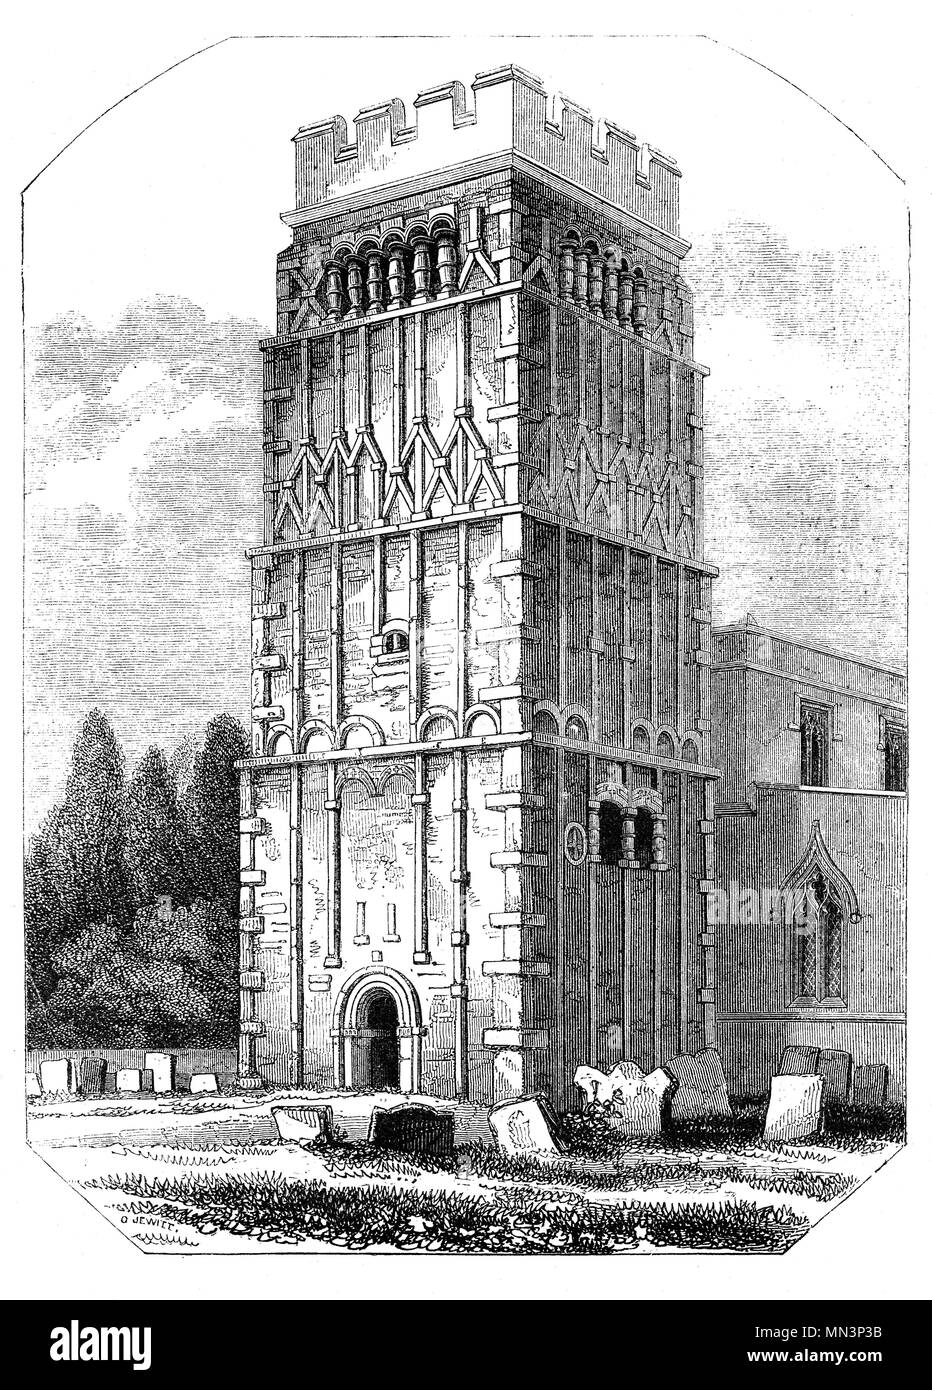 La tour de All Saints' Church, Earls Barton, un relevé de l'Église d'Angleterre anglo-saxonne dans l'église paroissiale Earls Barton, Northamptonshire. Il est estimé que l'édifice date du 10e siècle plus tard, peu après les raids danois sur l'Angleterre. Après la conquête normande de l'Angleterre anglo-saxonne appelée Waltheof était devenu le premier comte de Northampton. Il a épousé la nièce de William J, Judith, et elle a obtenu des terres à Earls Barton Barton nommé plus tard. Banque D'Images